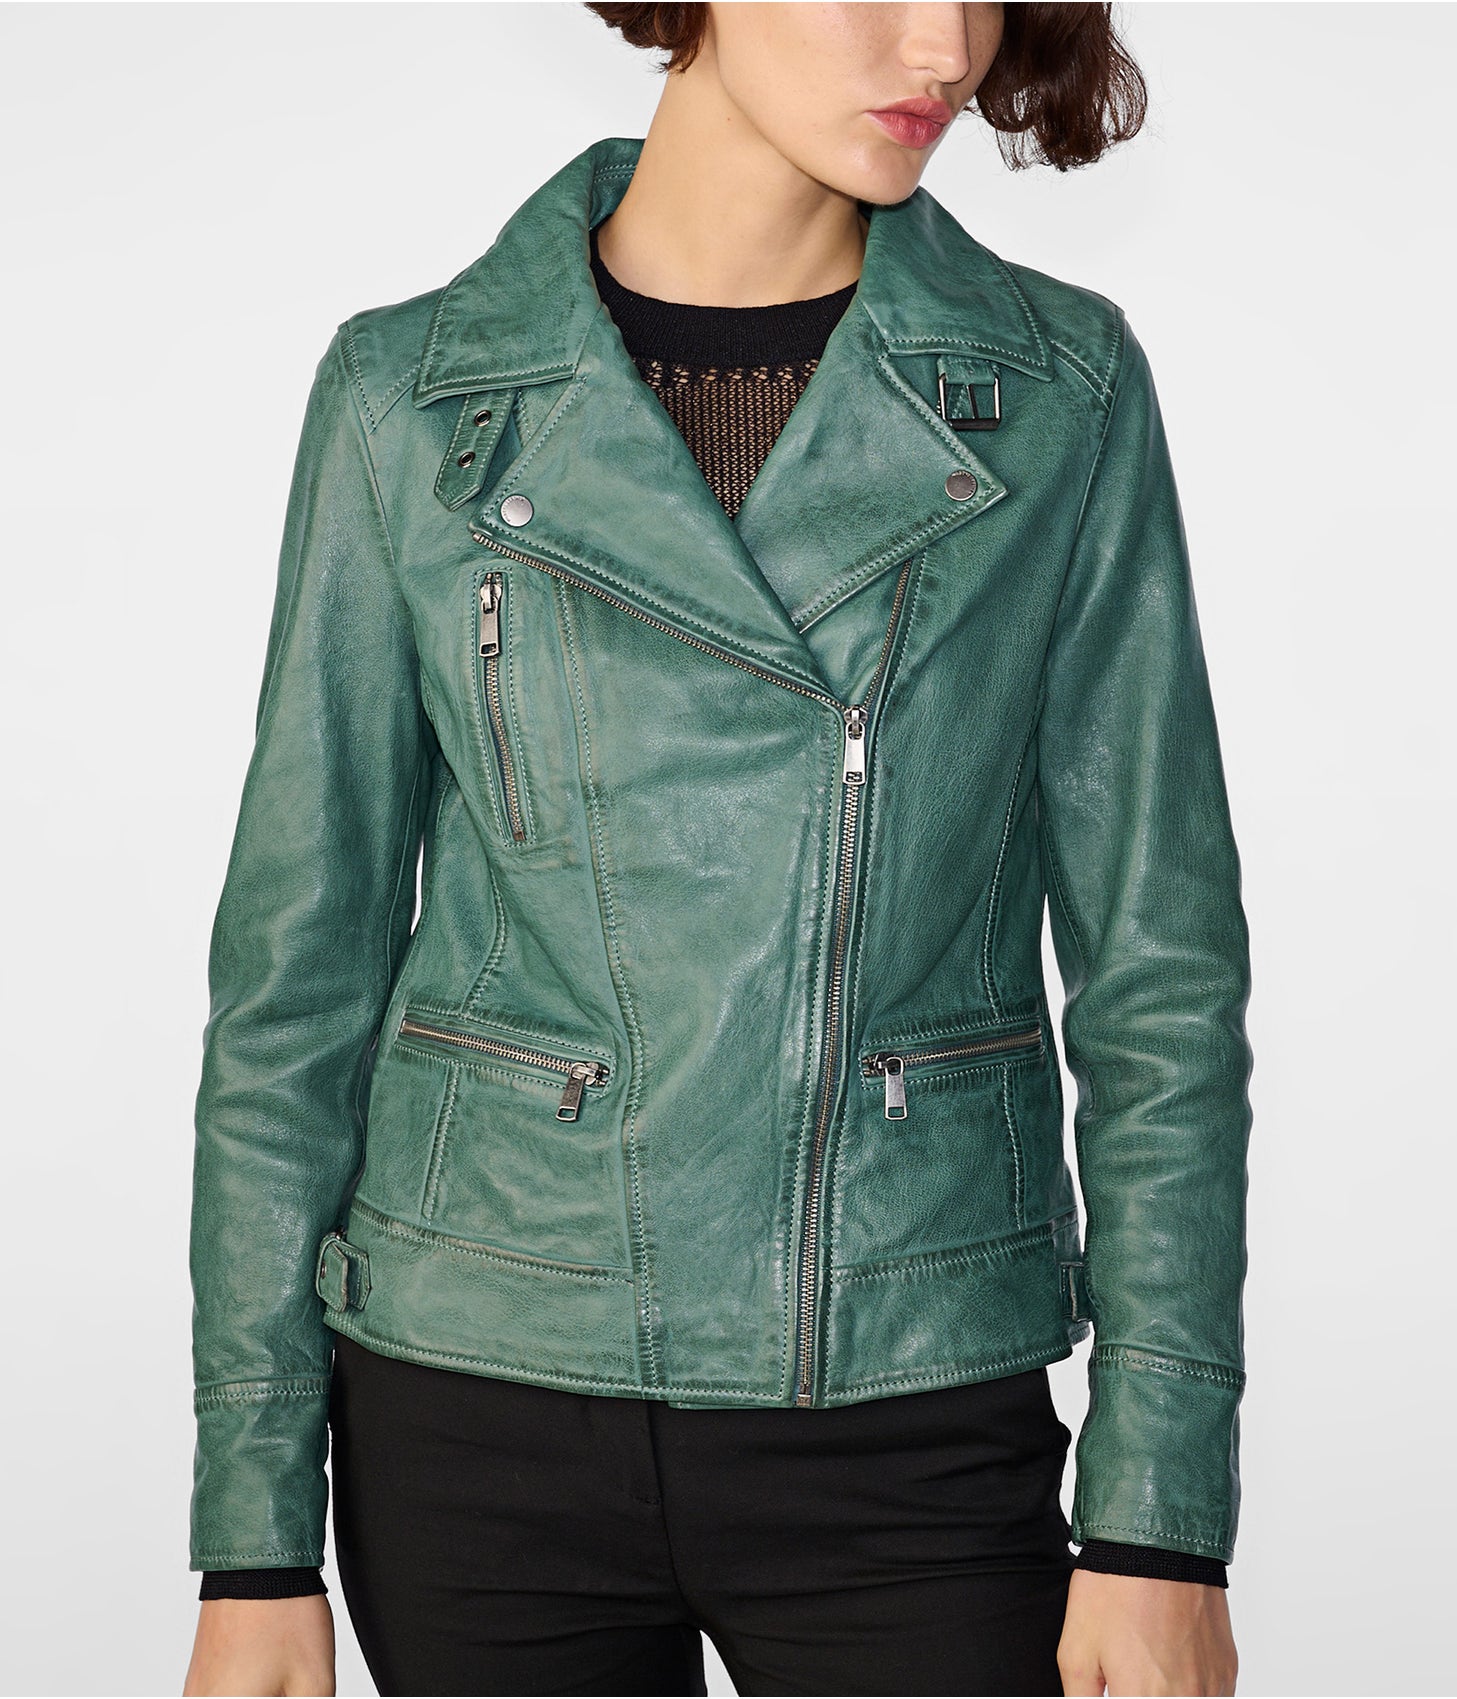 Women's Distressed Leather Biker Jacket In Sea Green